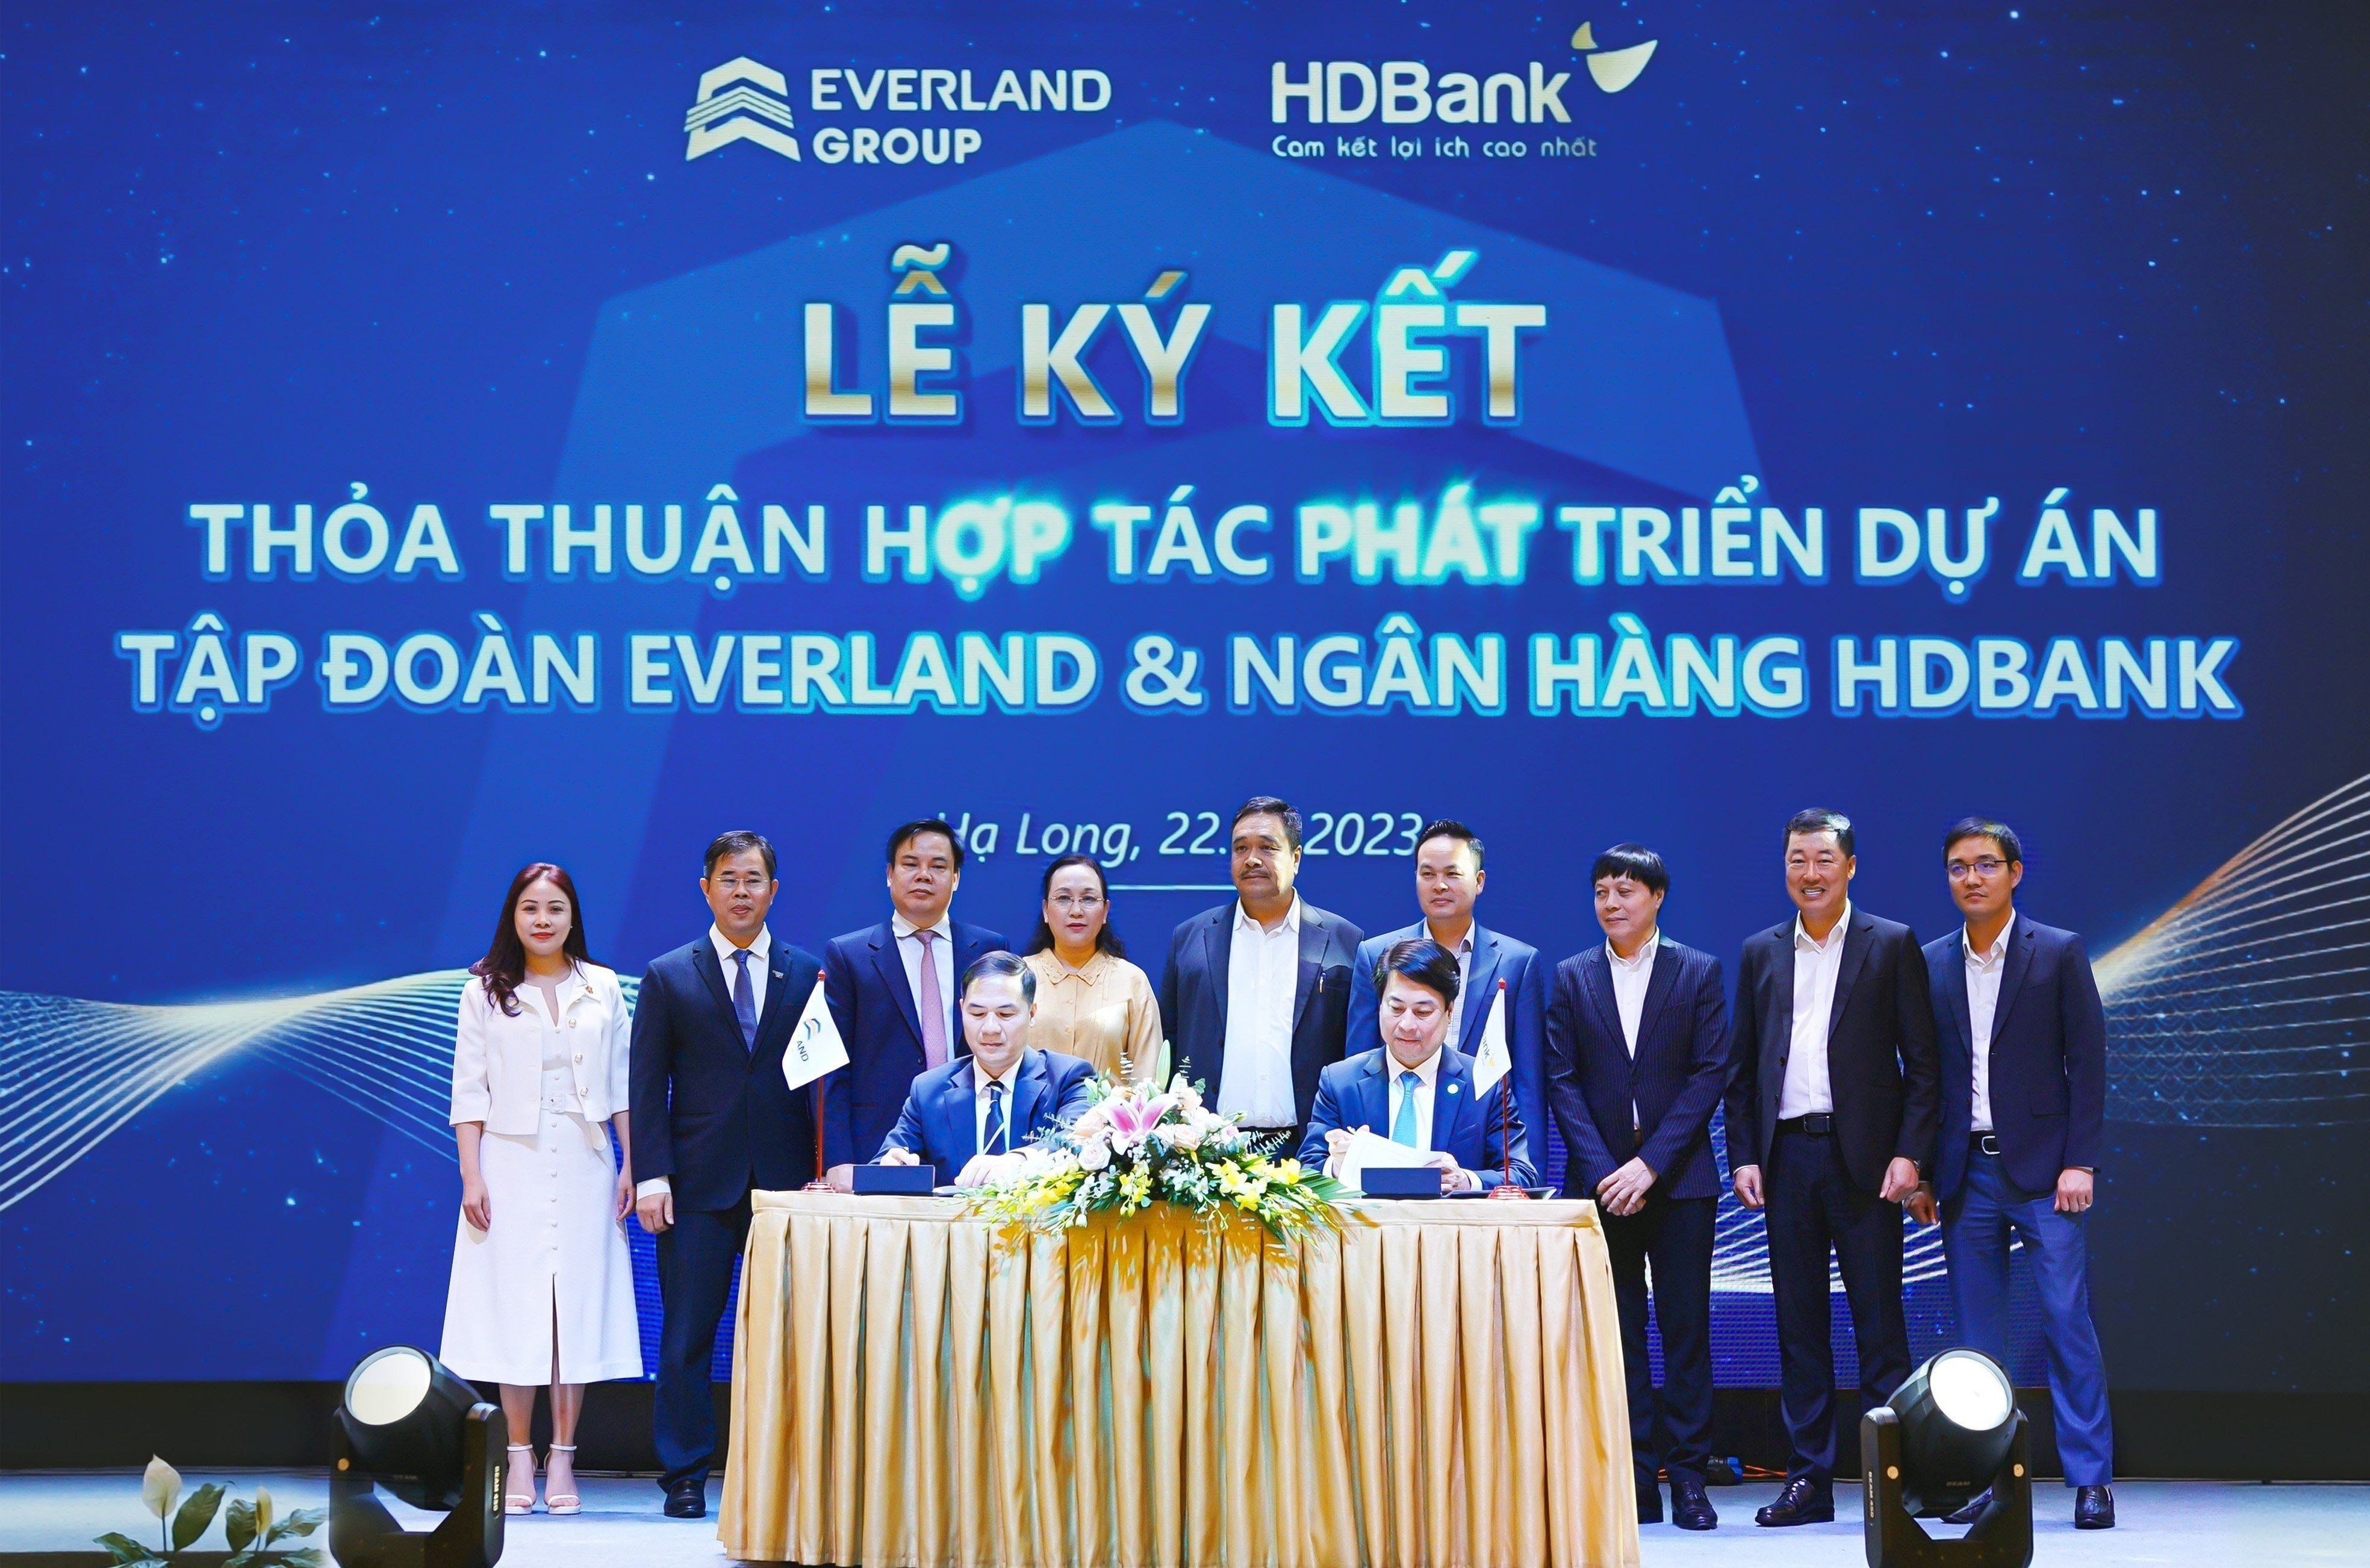 Lễ ký kết thỏa thuận hợp tác phát triển dự án giữa Tập đoàn Everland & HDBank (22/03/2023)